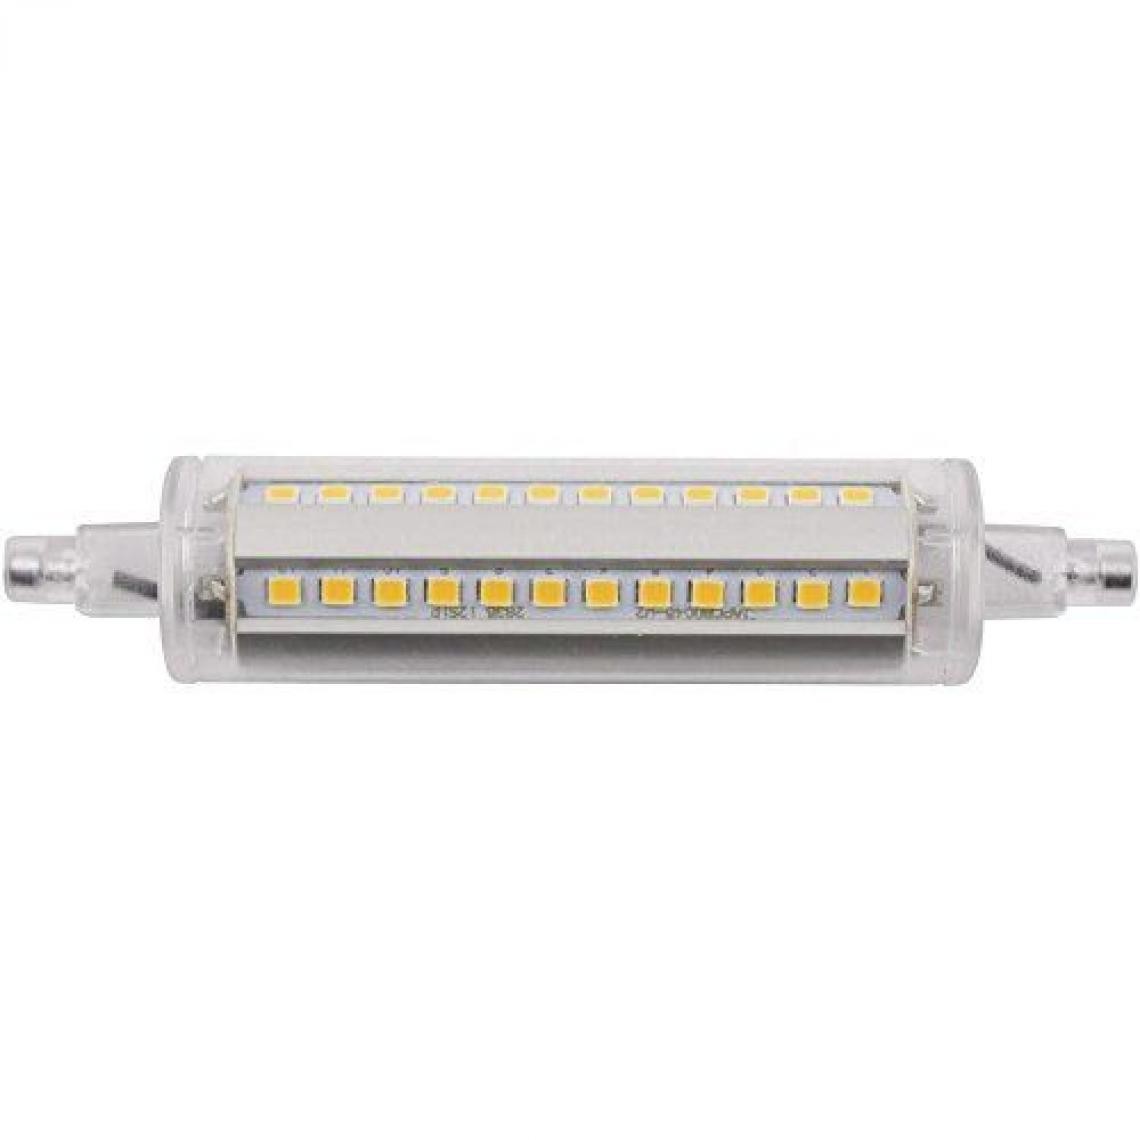 Inconnu - Ampoule LED R7s LightMe LM85119 en forme de tube 8 W blanc chaud (Ø x L) 24 mm x 118 mm EEC: classe A+ 1 pc(s) - Ampoules LED